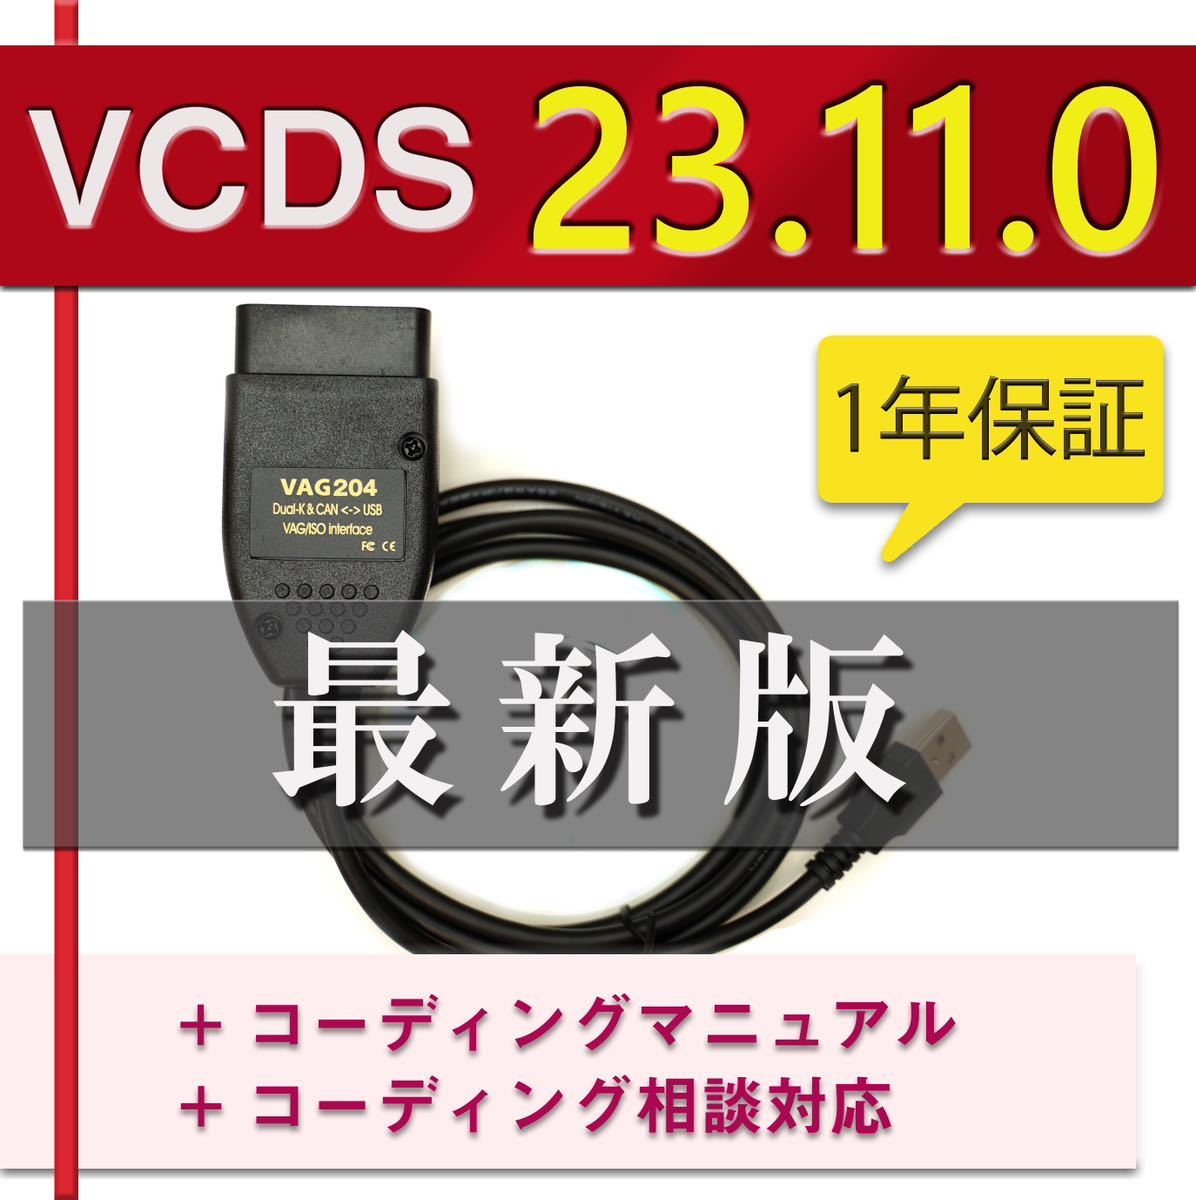 【最新23.11.0】1年間保証 VCDS 互換ケーブル コーディングマニュアル付 アウディ・VW車両に ゴルフ7.5 audi a1 A3 A4等の画像1